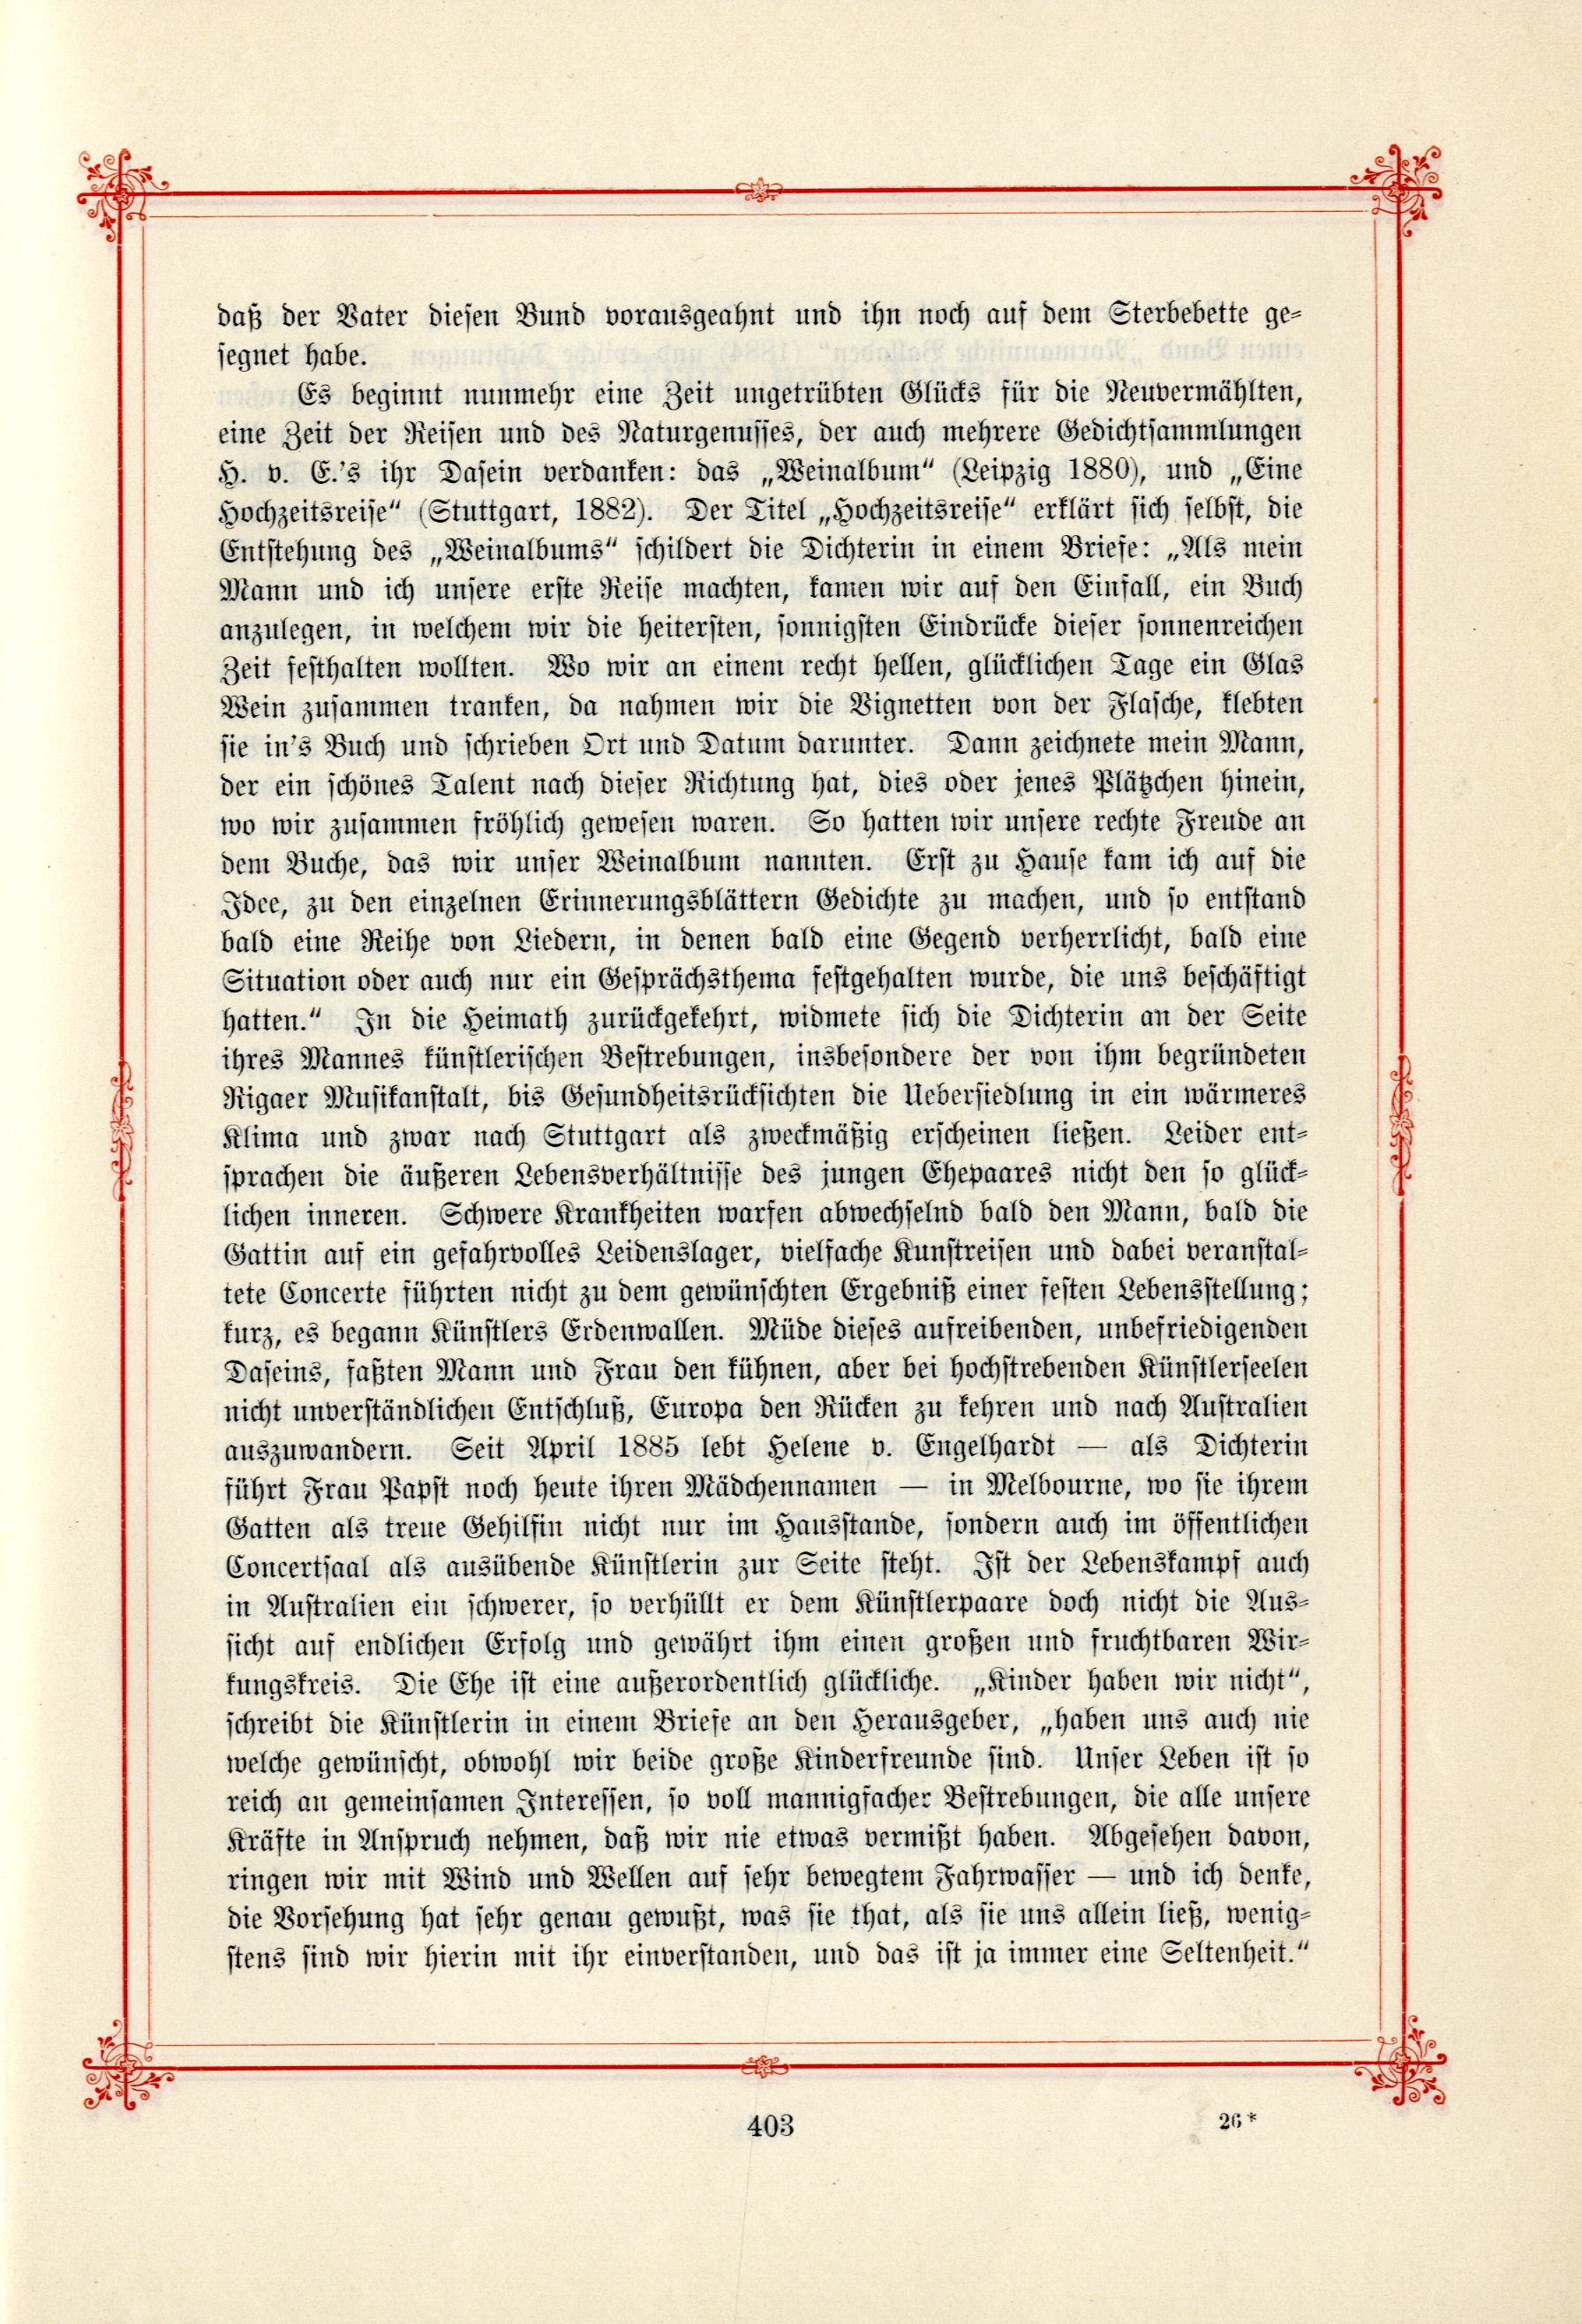 Das Baltische Dichterbuch (1895) | 449. (403) Main body of text